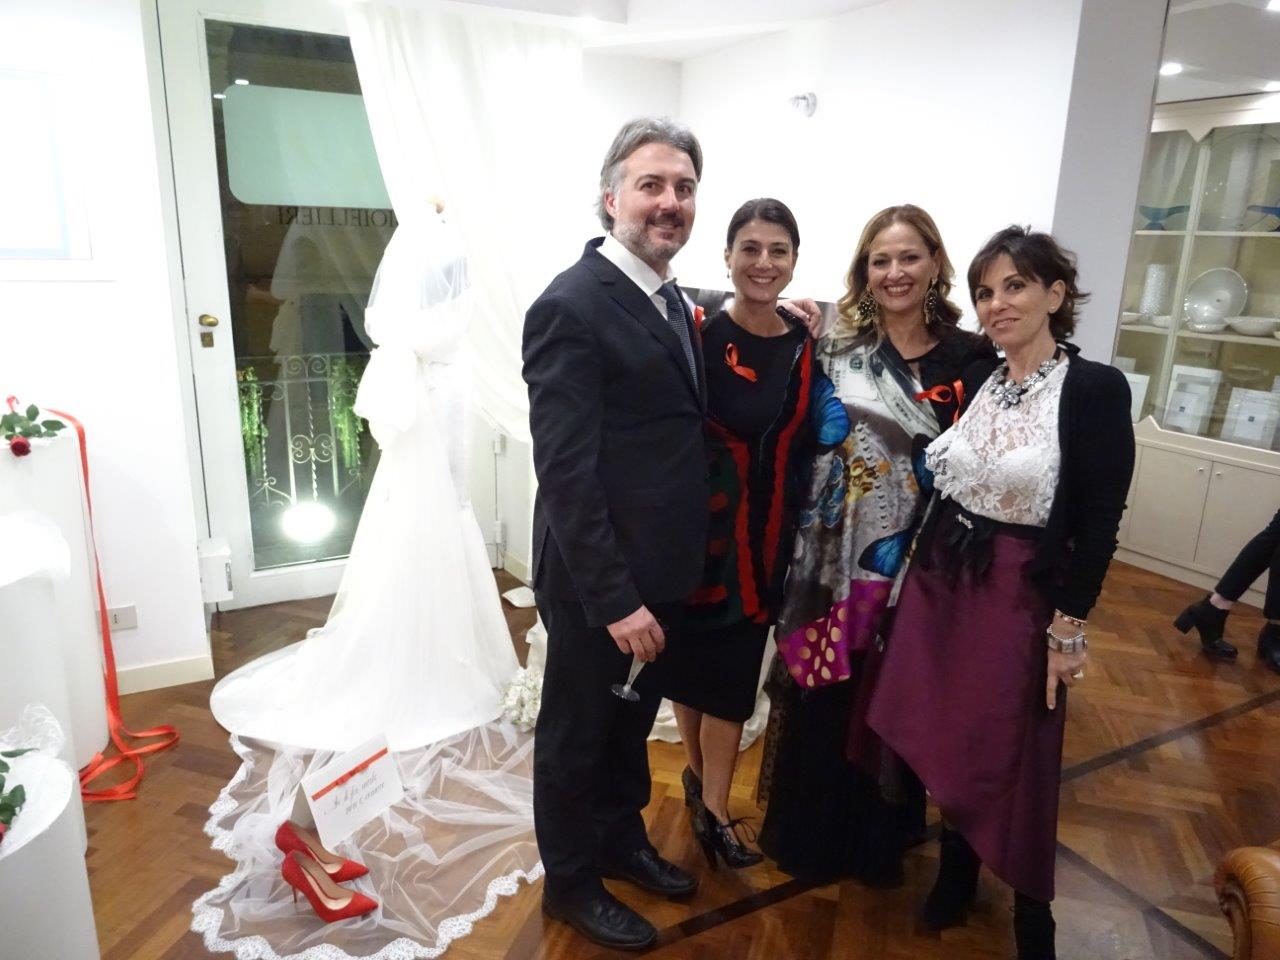 Cristian Cipolla, Manuela Monaco, Loredana Giliberto, Vivia Cascio